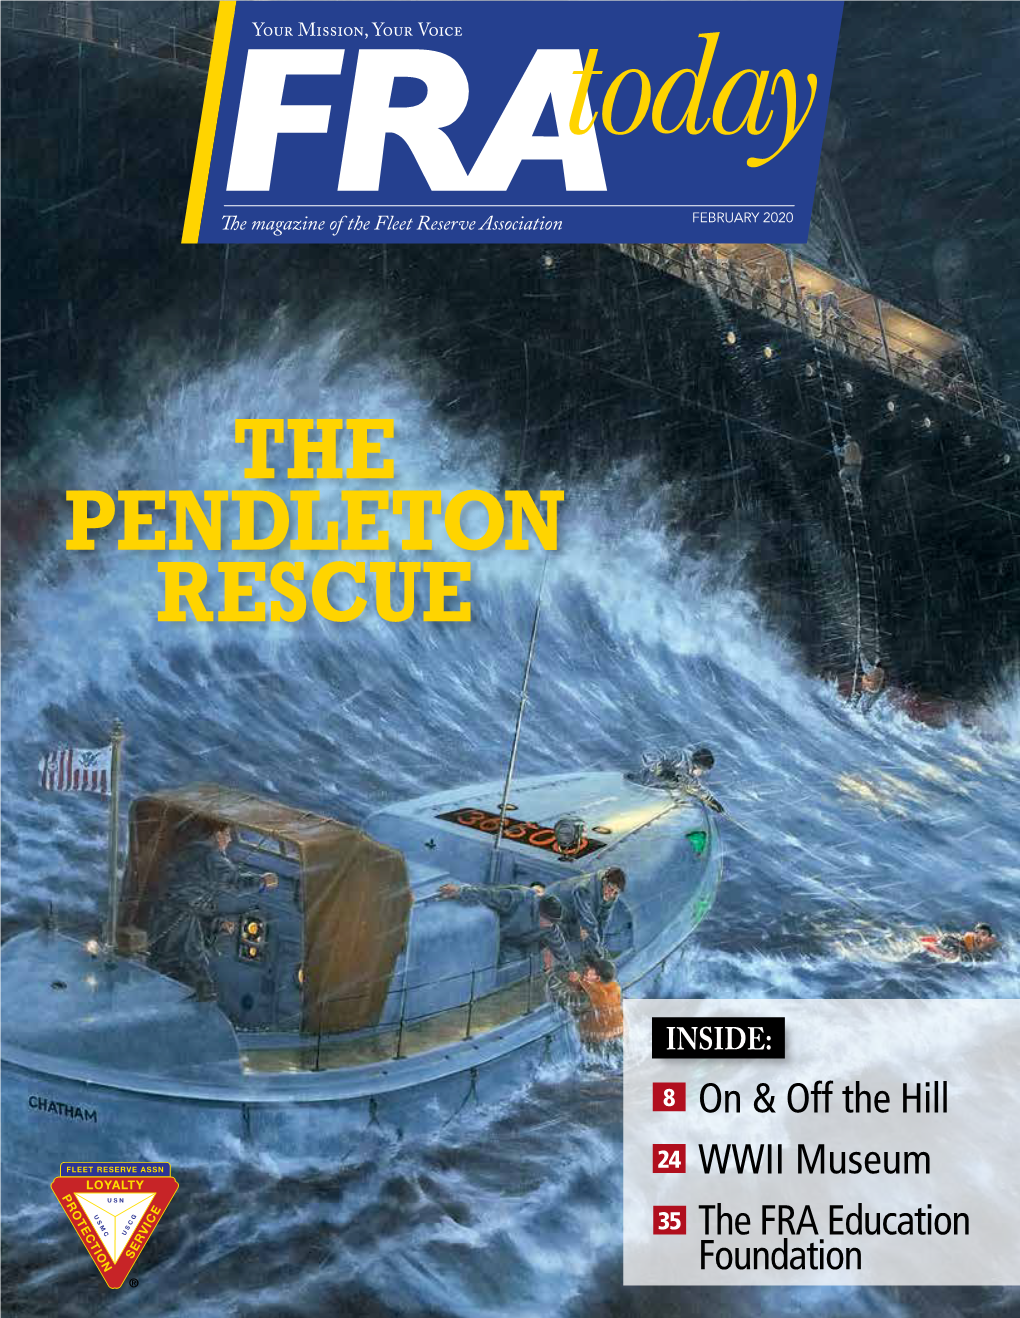 The Pendleton Rescue